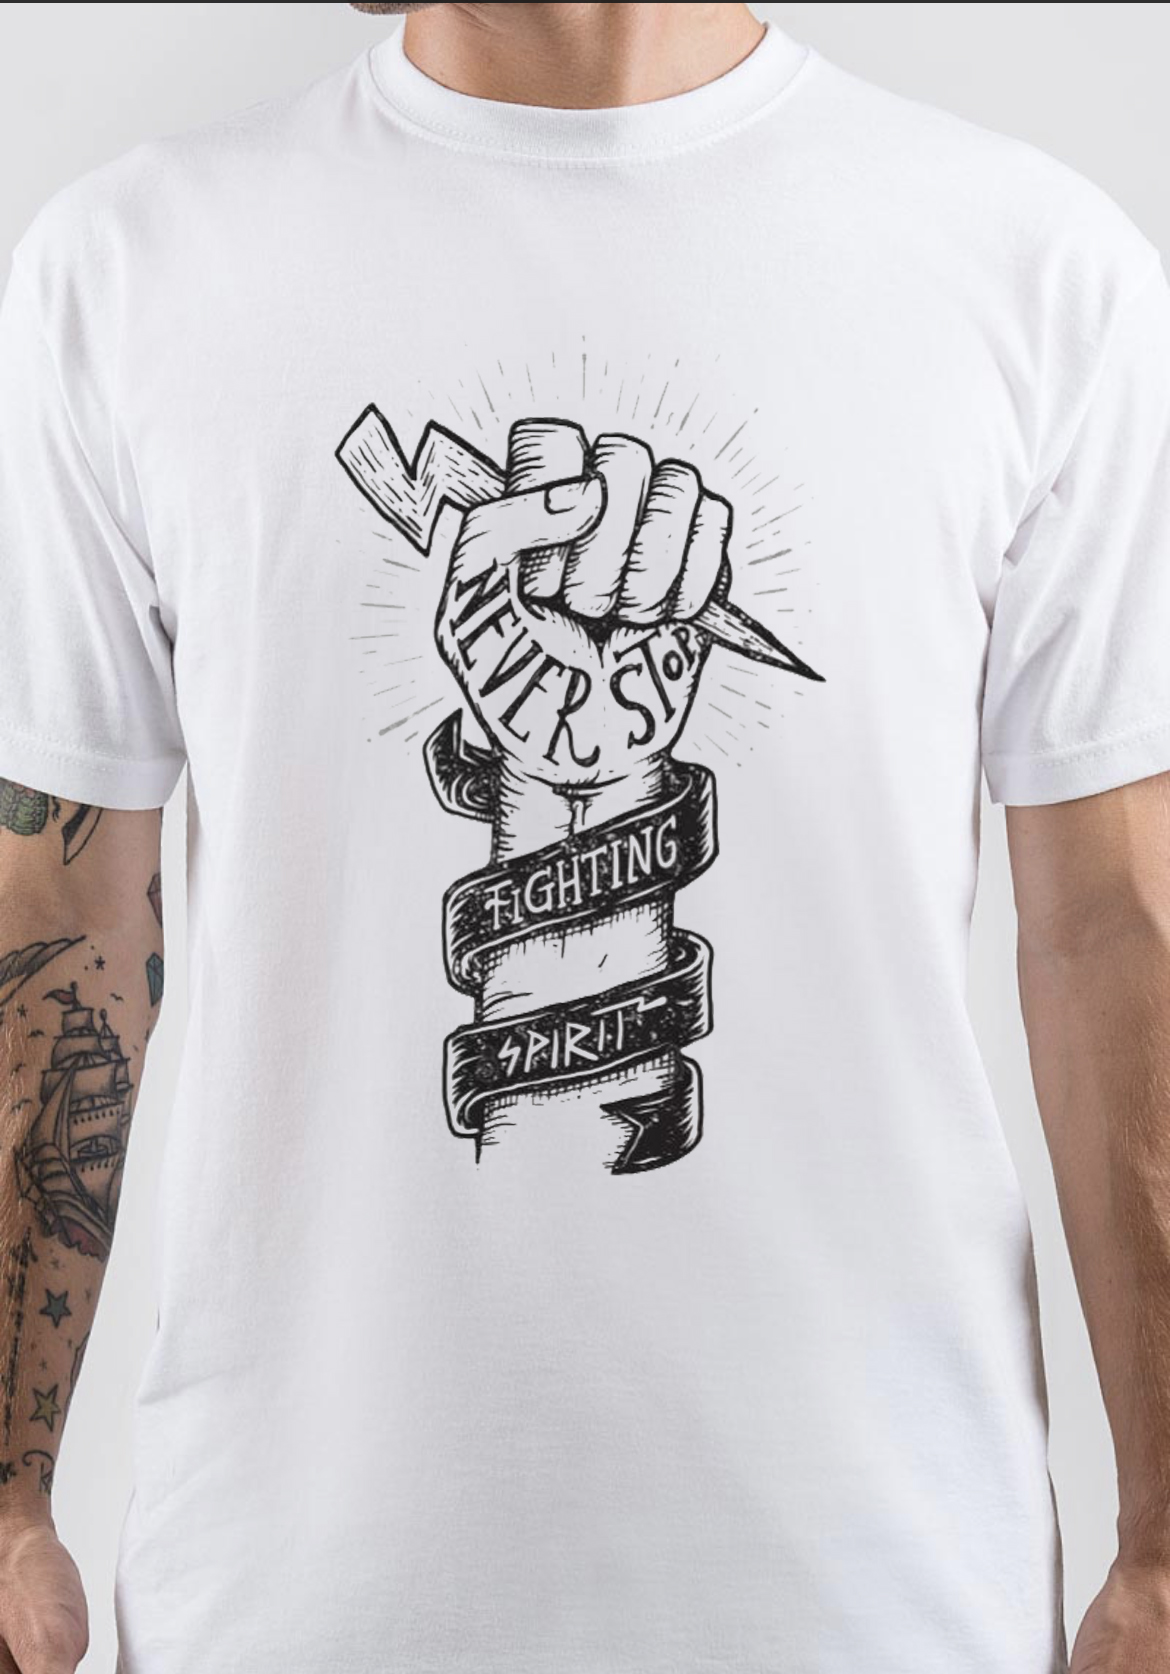 Fighting Spirit T-Shirt And Merchandise